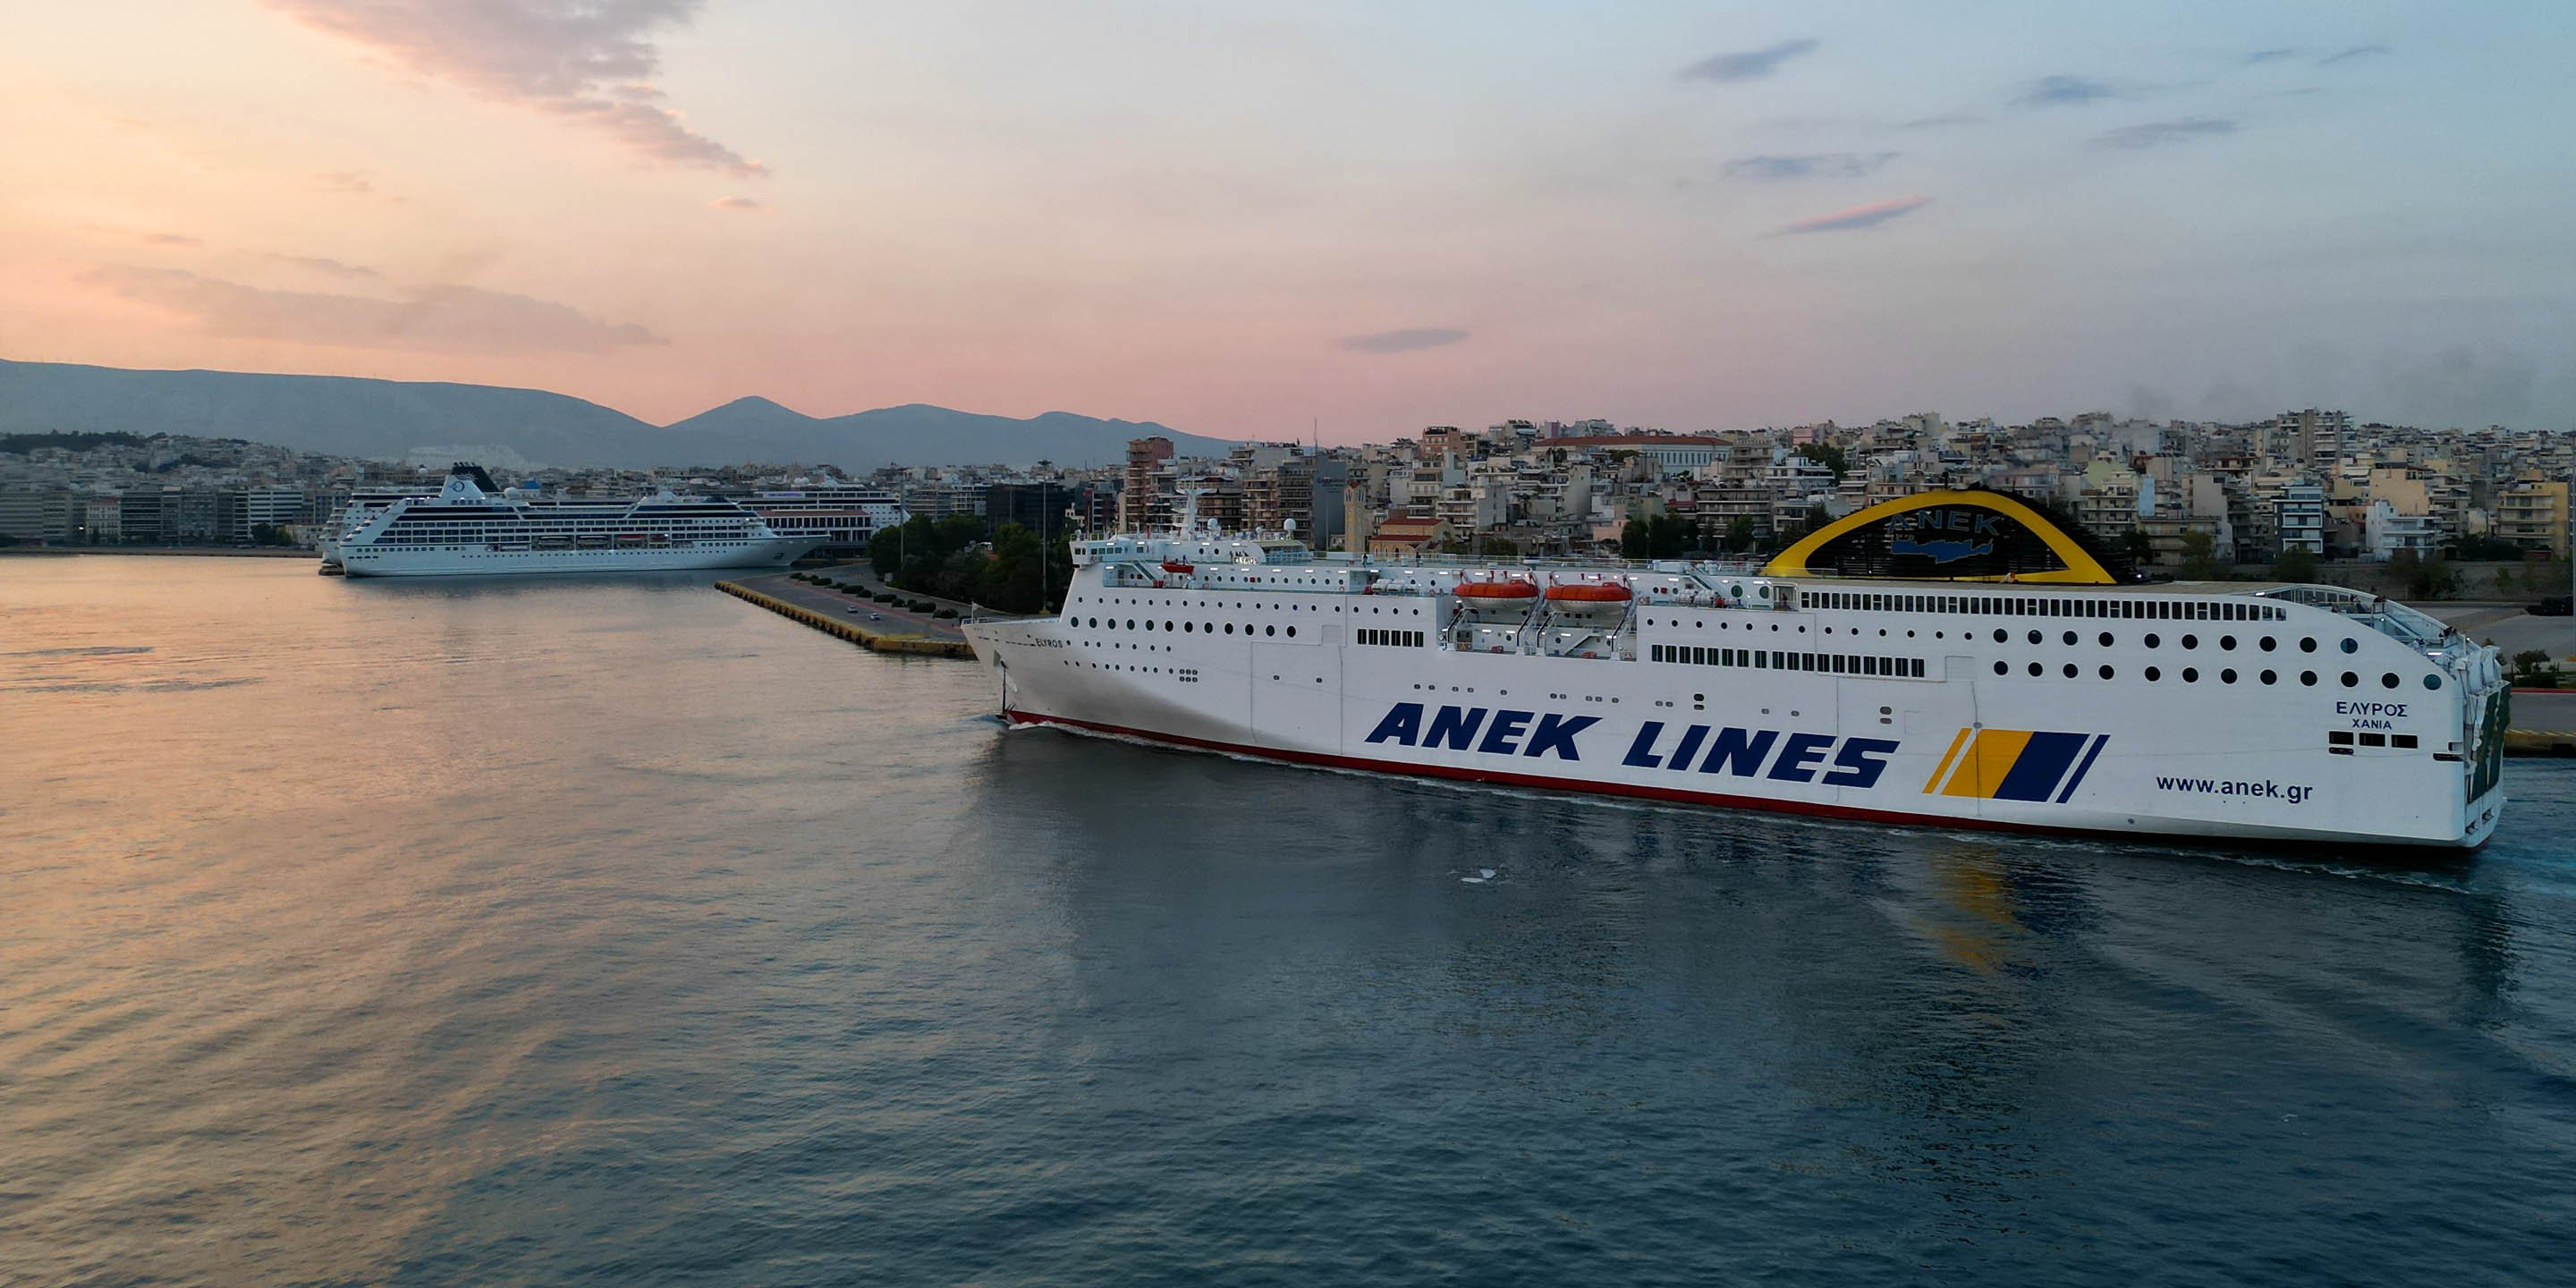 Il traghetto convenzionale Elyros nel porto del Pireo, pronto per la partenza verso la città di Chania, a Creta